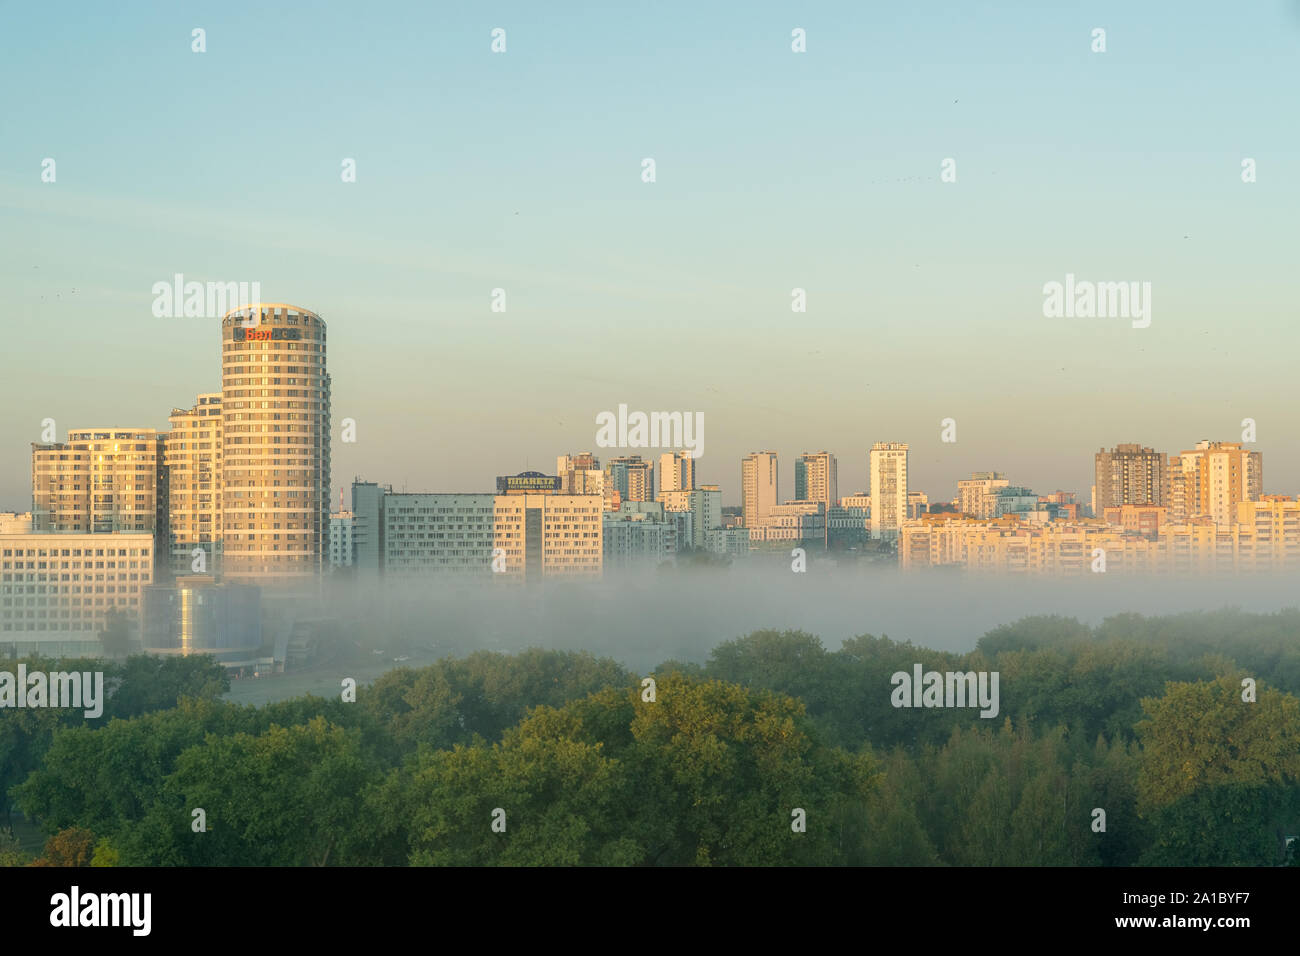 Los nuevos distritos de Minsk, capital de Bielorrusia, con nuevas casas de varios pisos en las primeras brumosa mañana de otoño Foto de stock